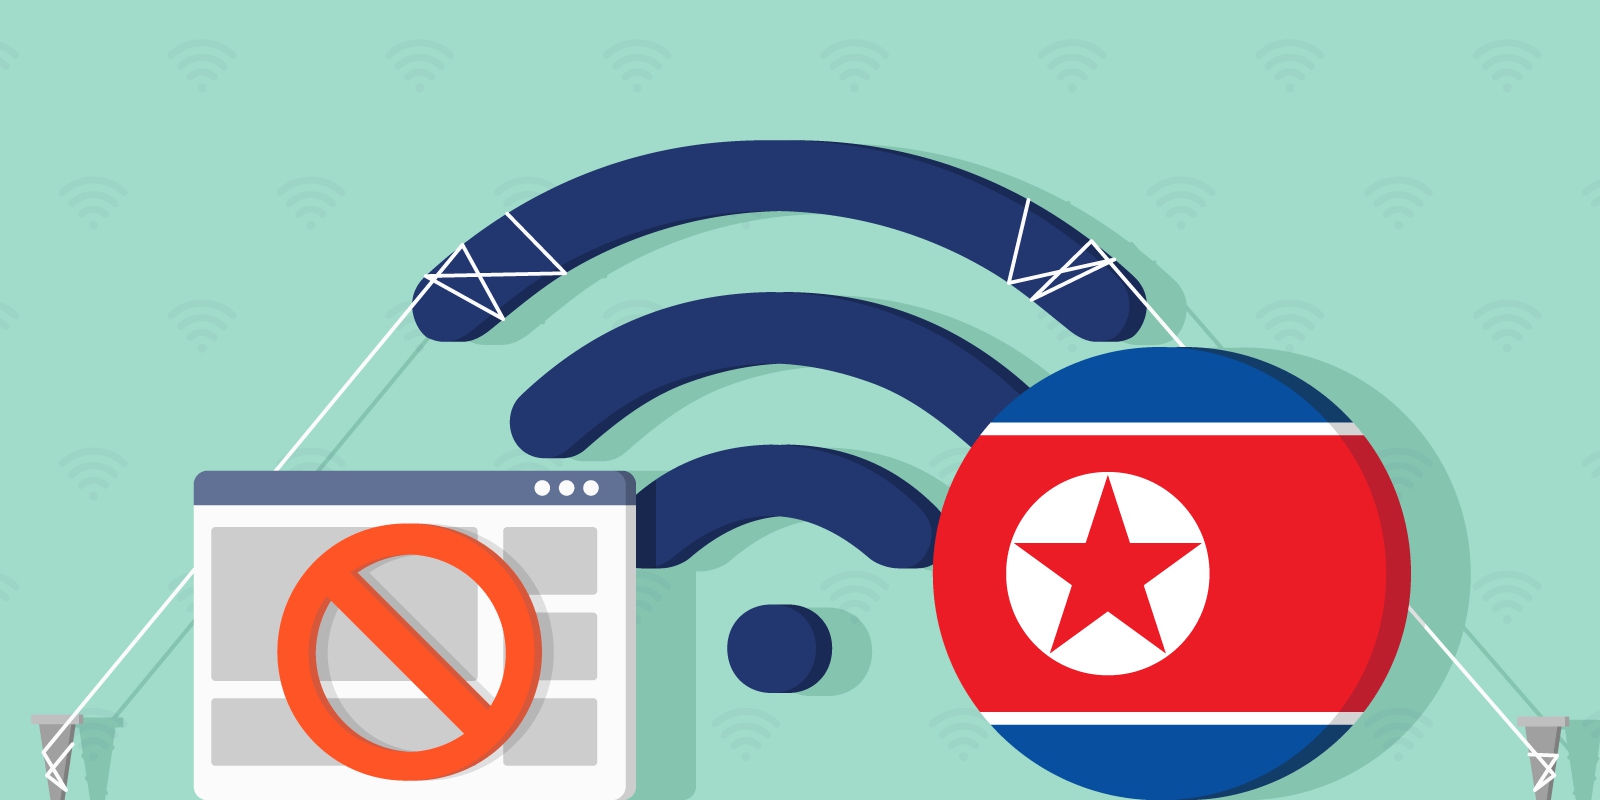 Các nhà nghiên cứu Mỹ vừa cho biết, có tới 7 triệu người Triều Tiên sử dụng điện thoại di động hàng ngày và mạng Wi-Fi đã mở rộng mạnh mẽ trong những năm gần đây, khi thiết bị di động ngày càng trở thành công cụ chính cho hoạt động thị trường ở quốc gia bị cô lập này.